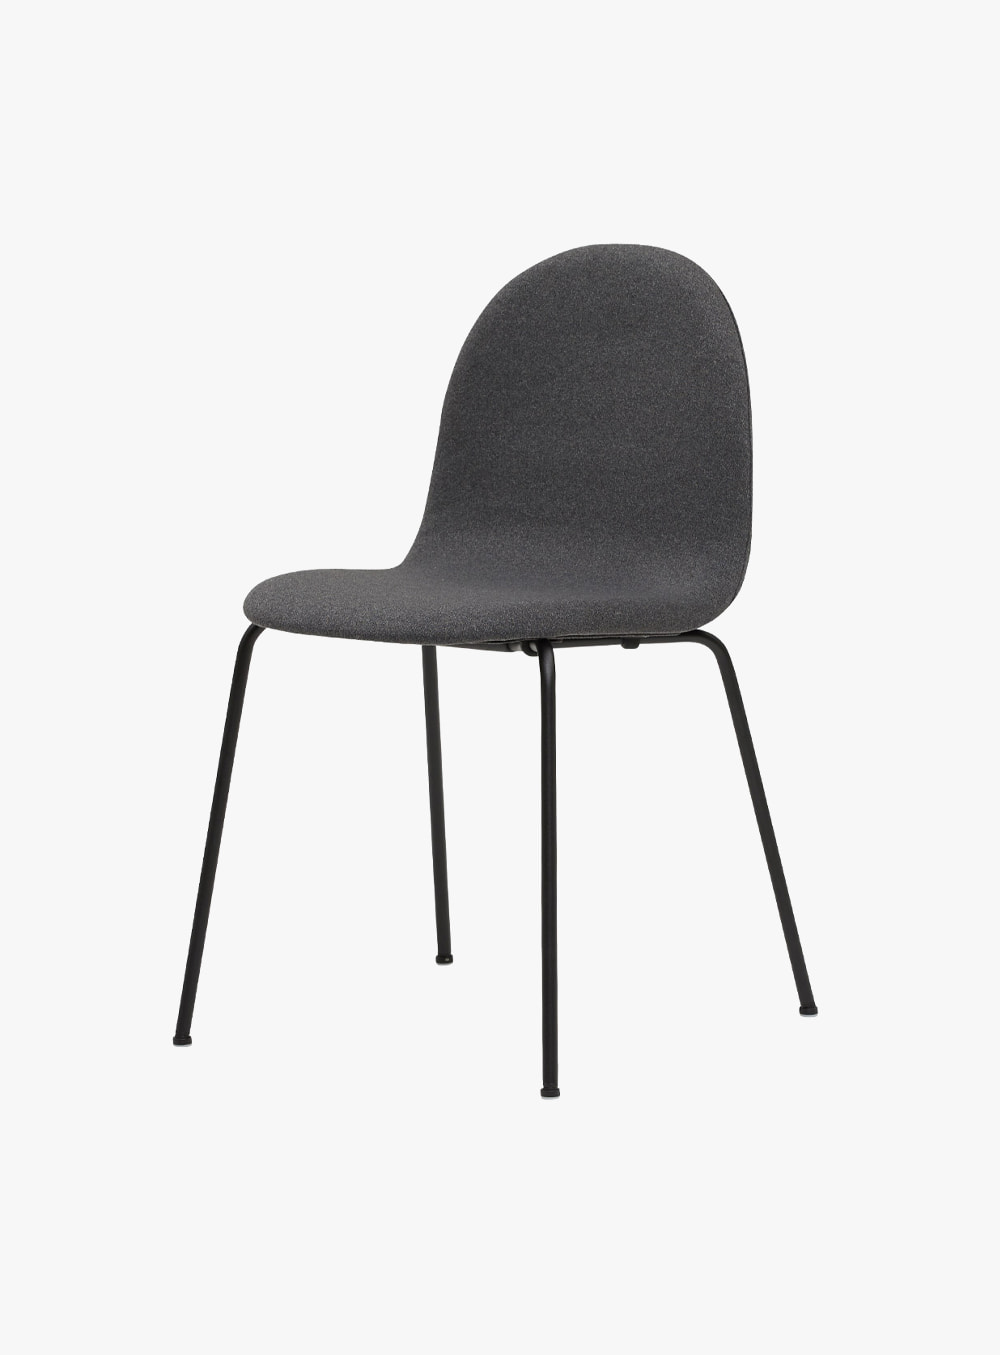 잭슨카멜레온 - Petalo Chair Fabricㅣ2205-C14